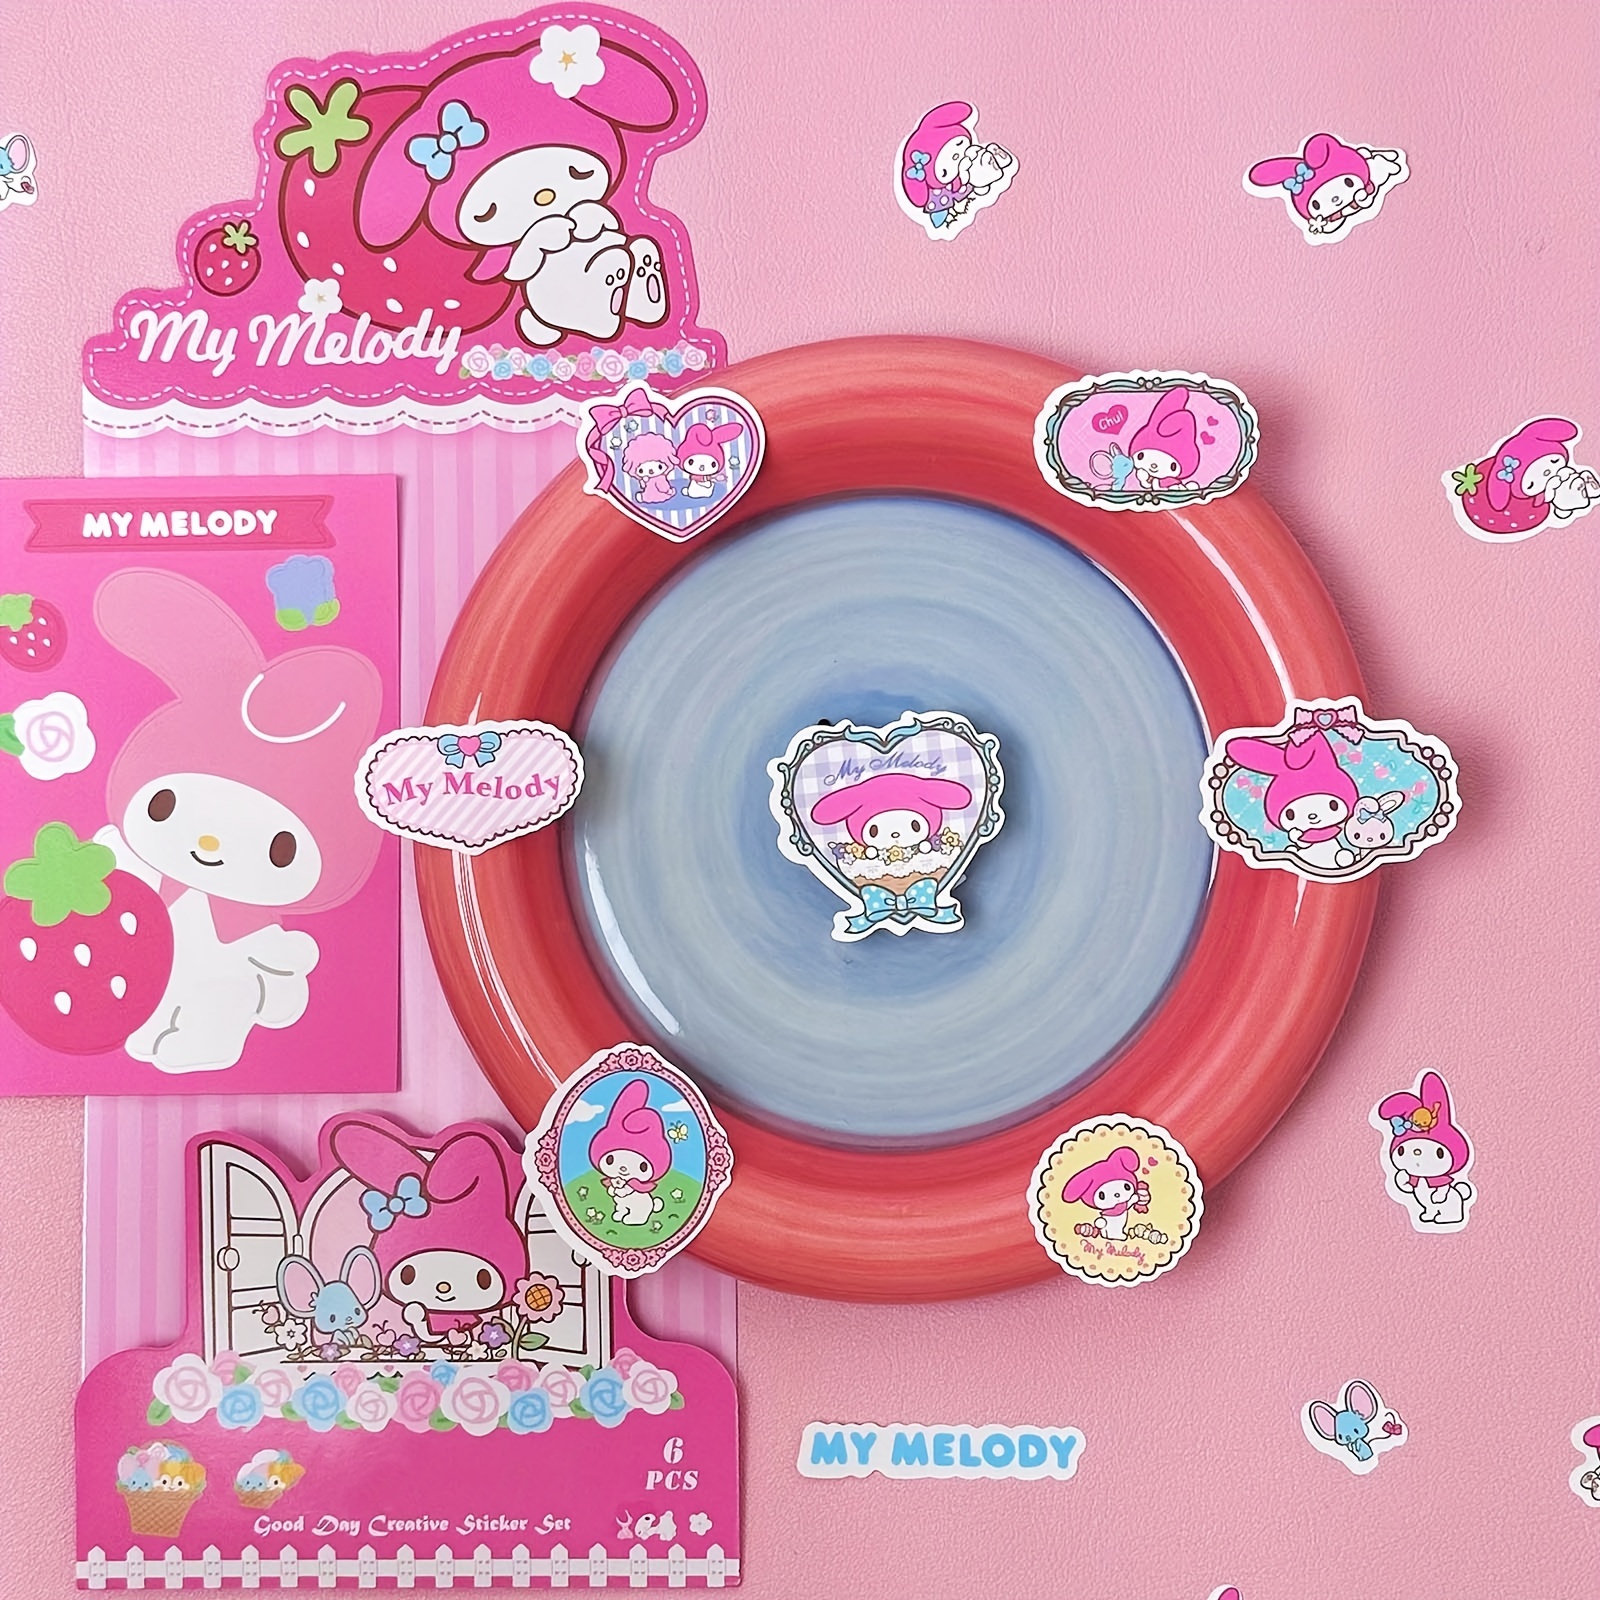 Kawaii Cartoon Sanrio Stationery Set Cute Hello Kitty My Melody